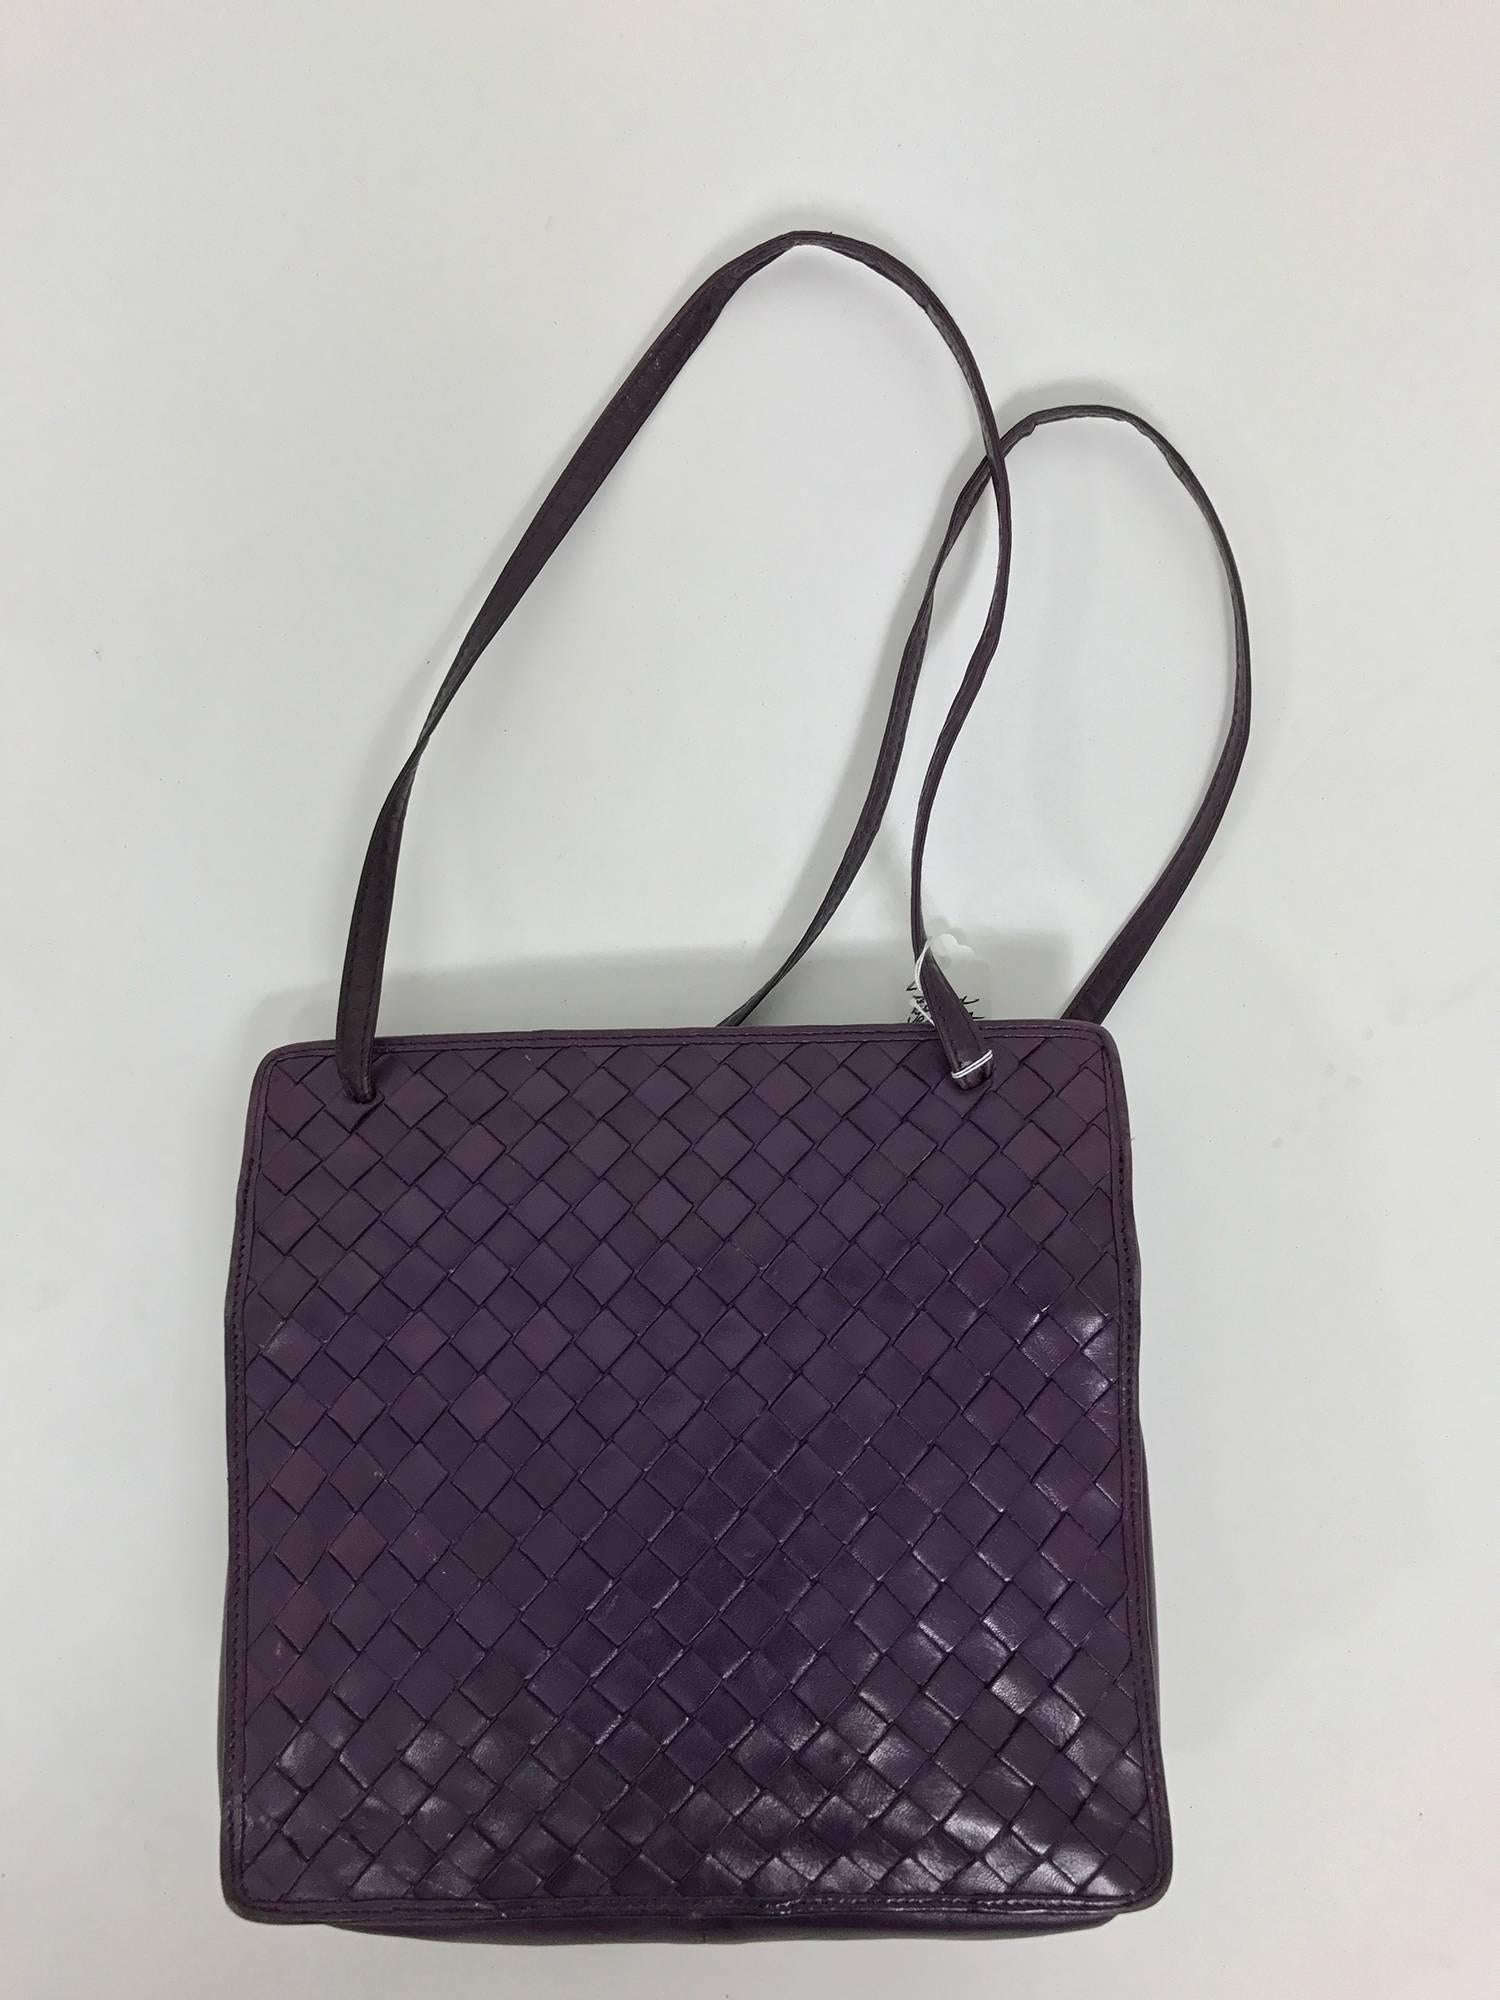 Black Bottega Veneta vintage 1980s intrecciato soft purple leather handbag 1980s